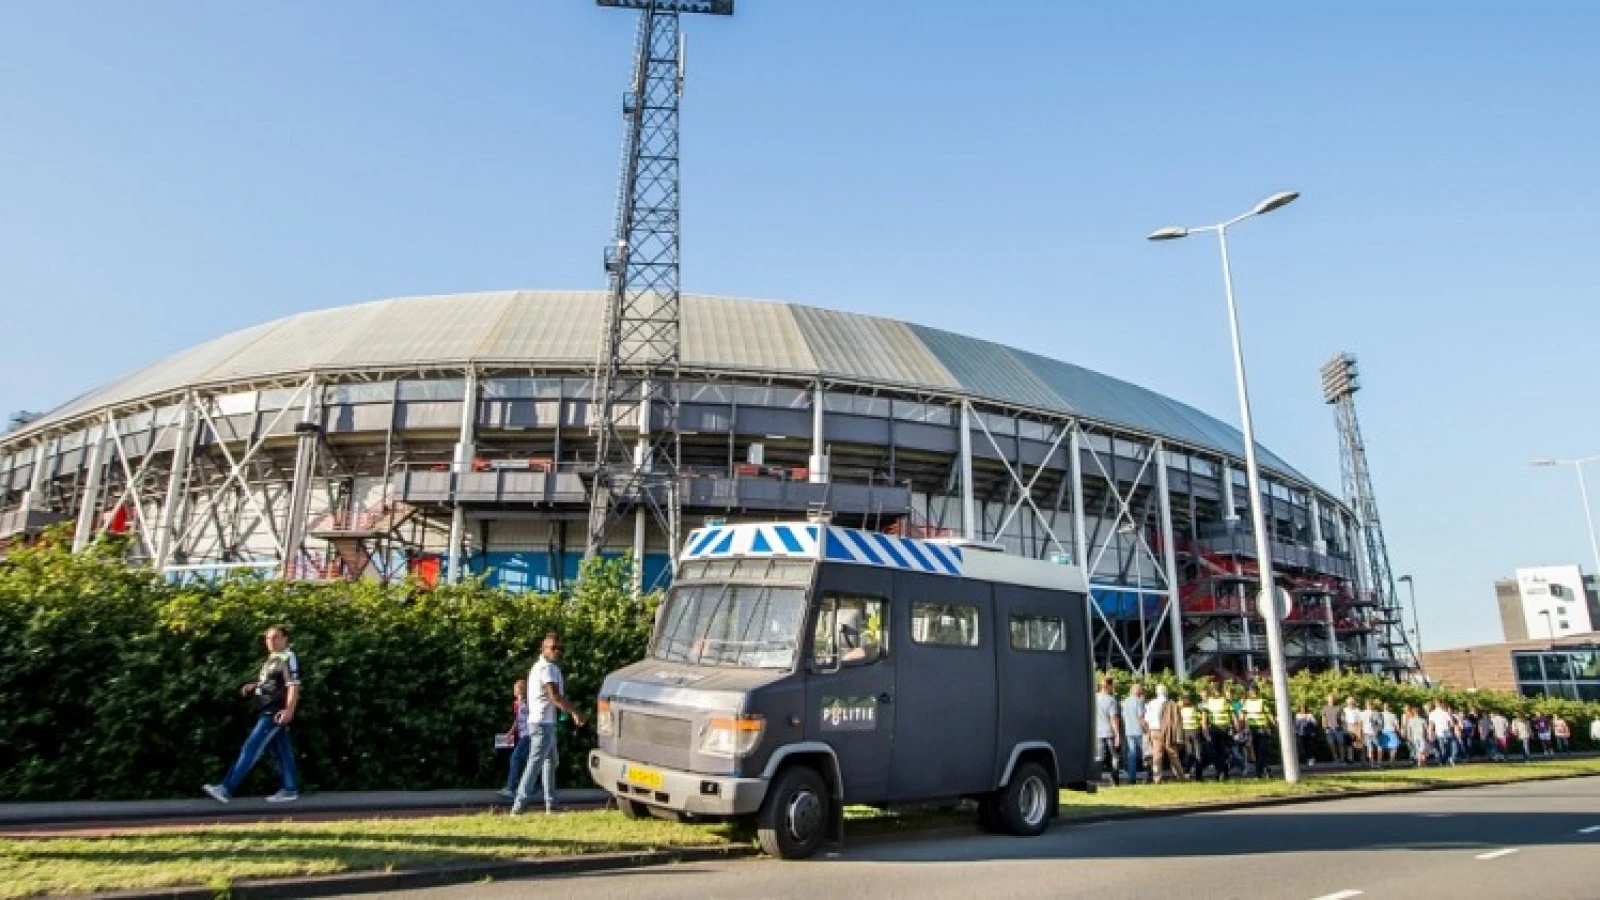 Vrijdag meer duidelijkheid over doorgaan wedstrijd AZ tegen Feyenoord